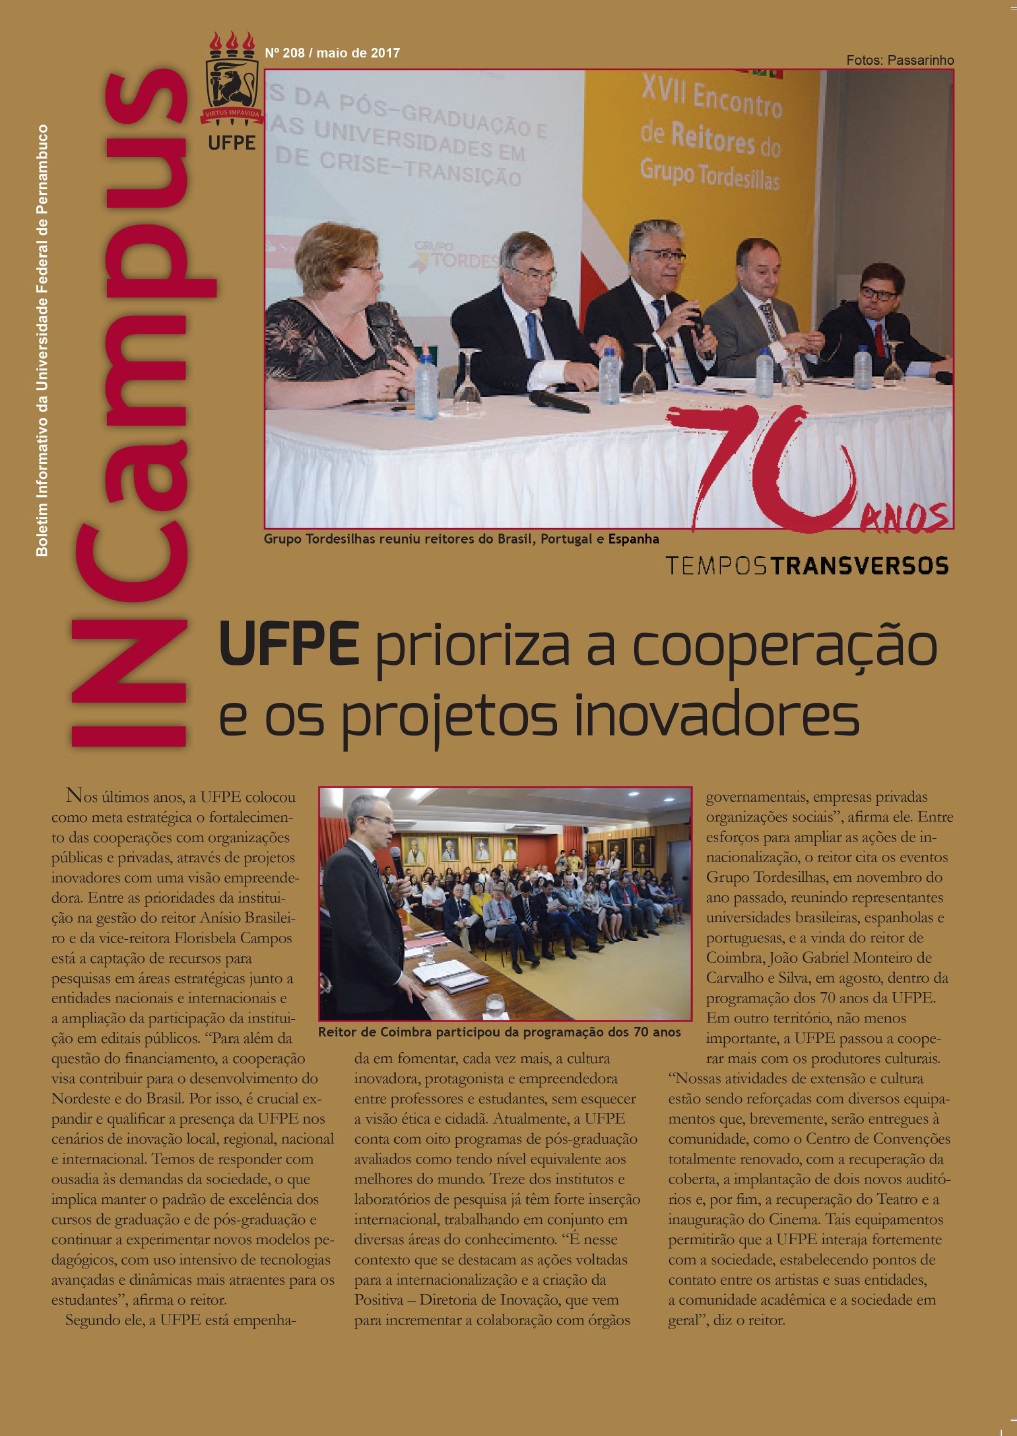 Capa da edição do Incampus de maio de 2015, comemorativa dos 70 anos da UFPE, com imagens de encontro do Grupo Tordesilhas